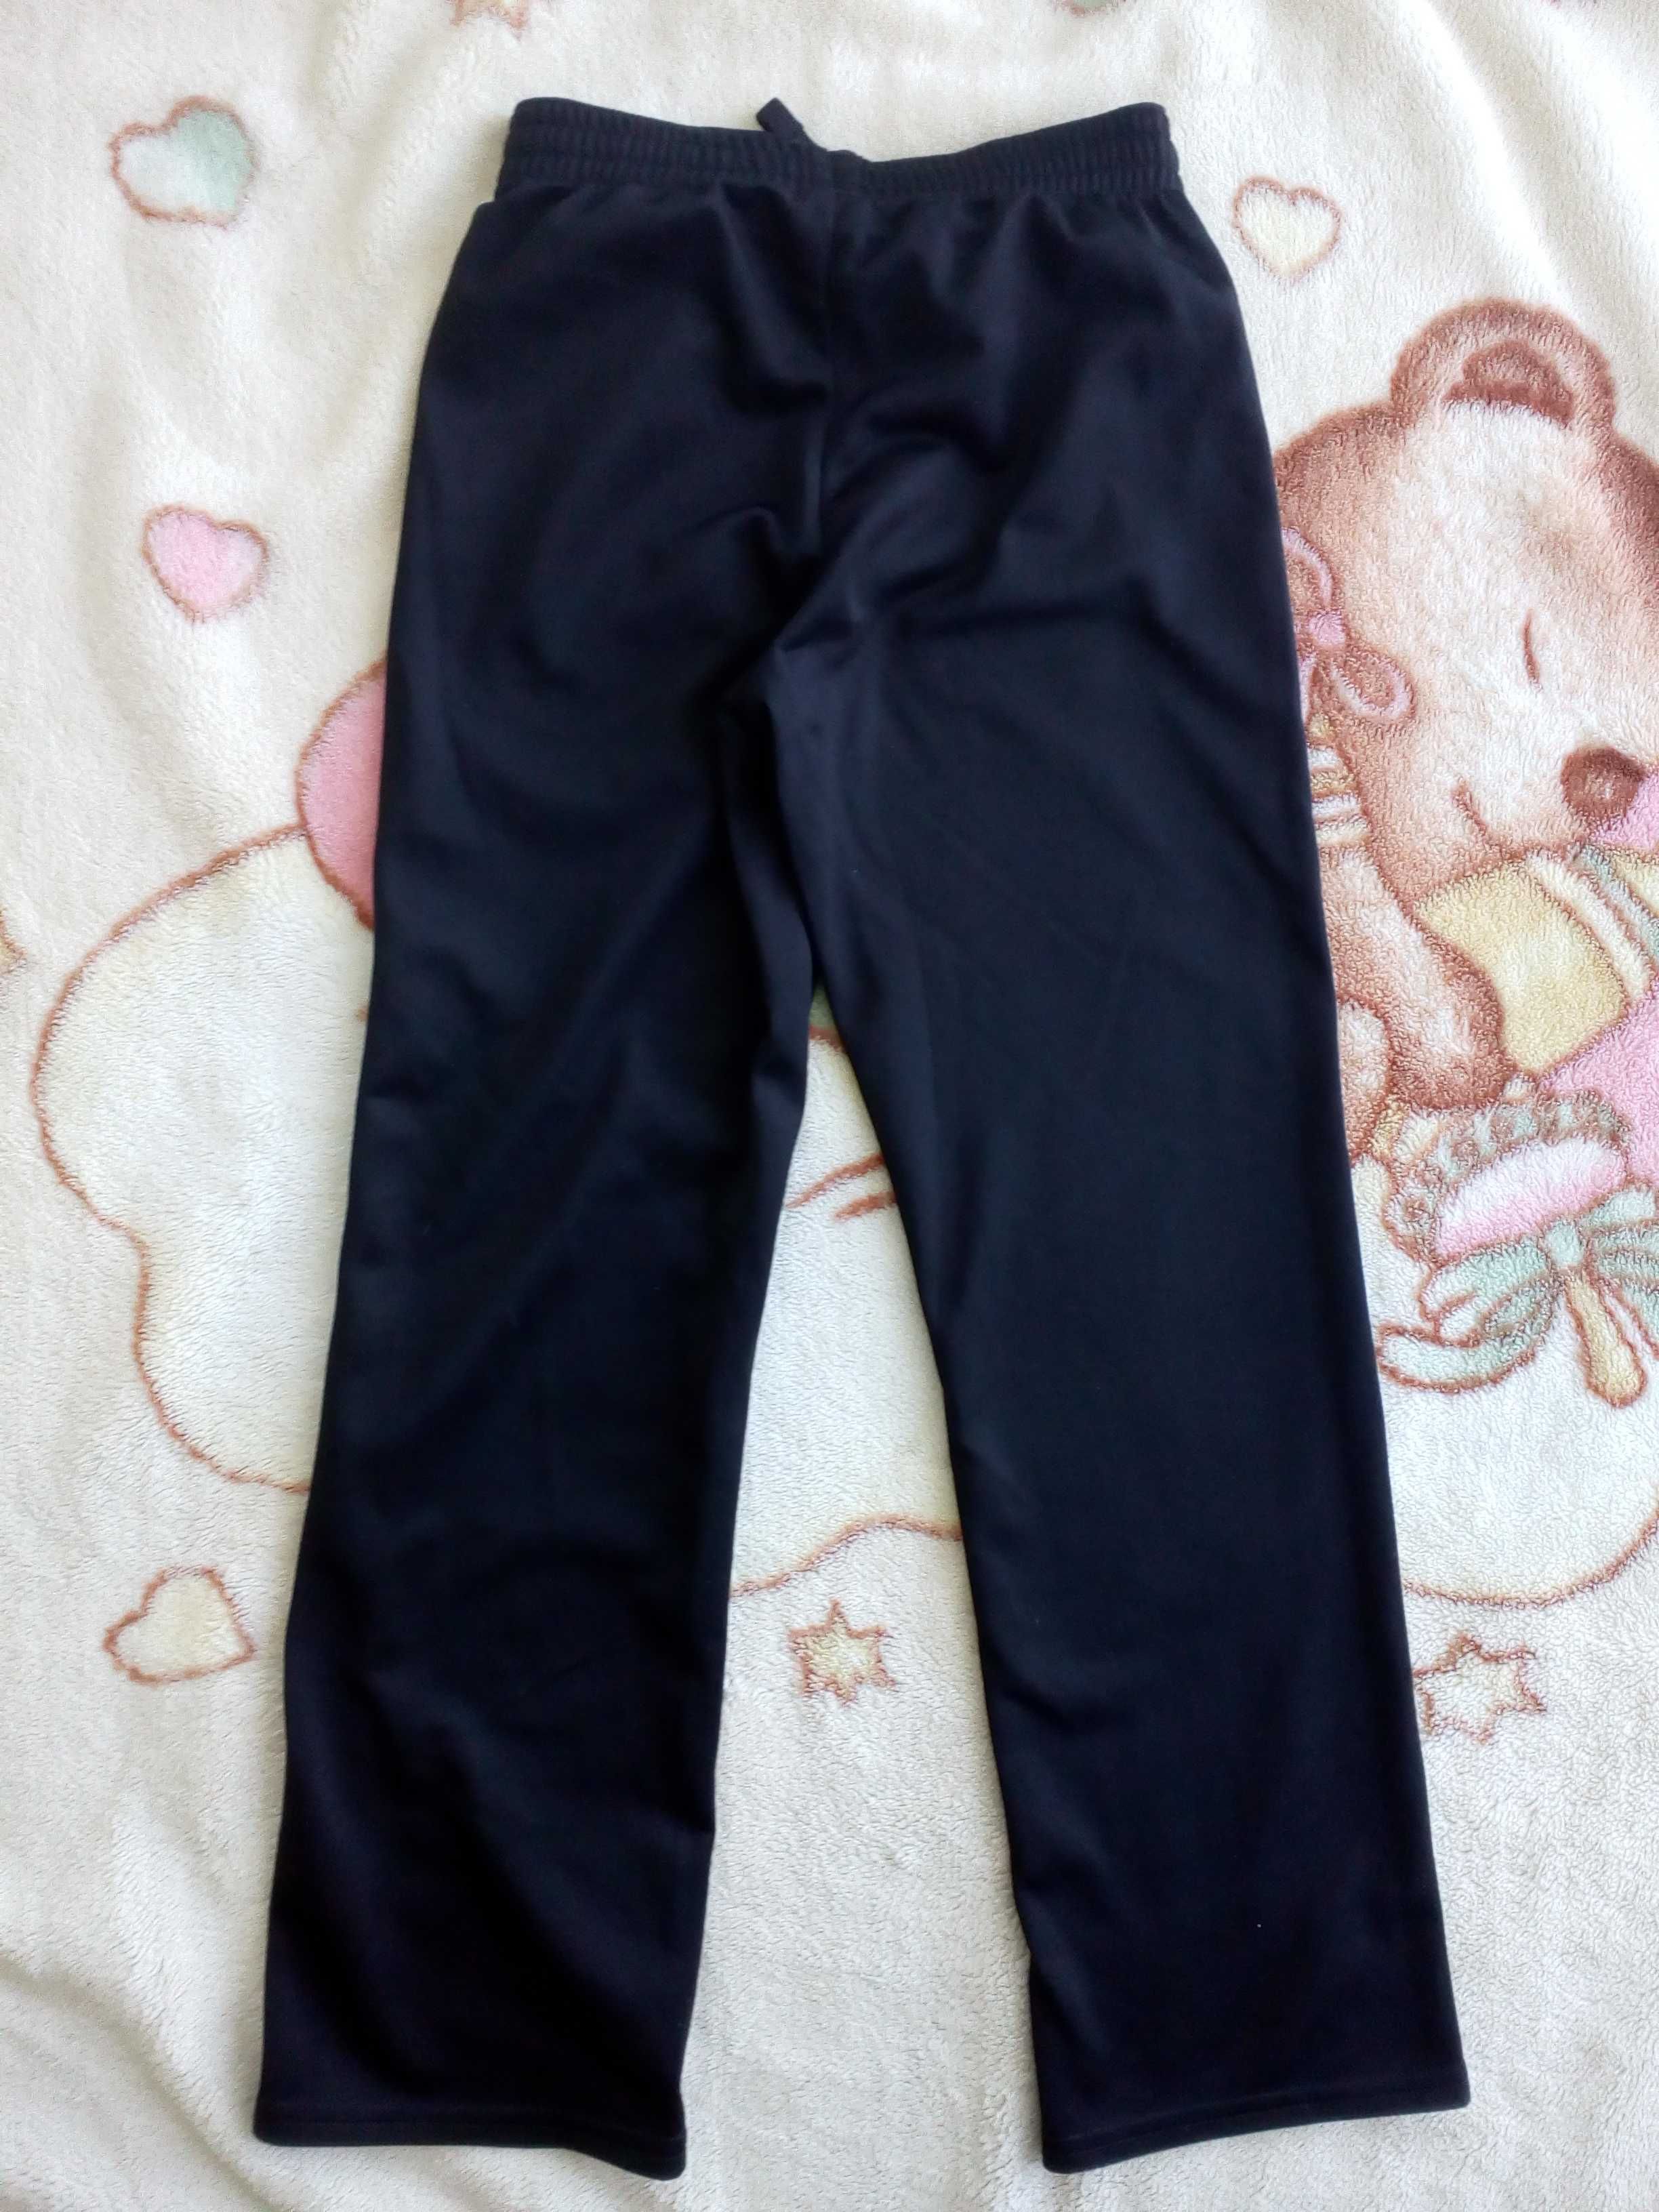 Czarne sportowe spodnie dresowe Decathlon Domyos 122 - 128 jak nowe